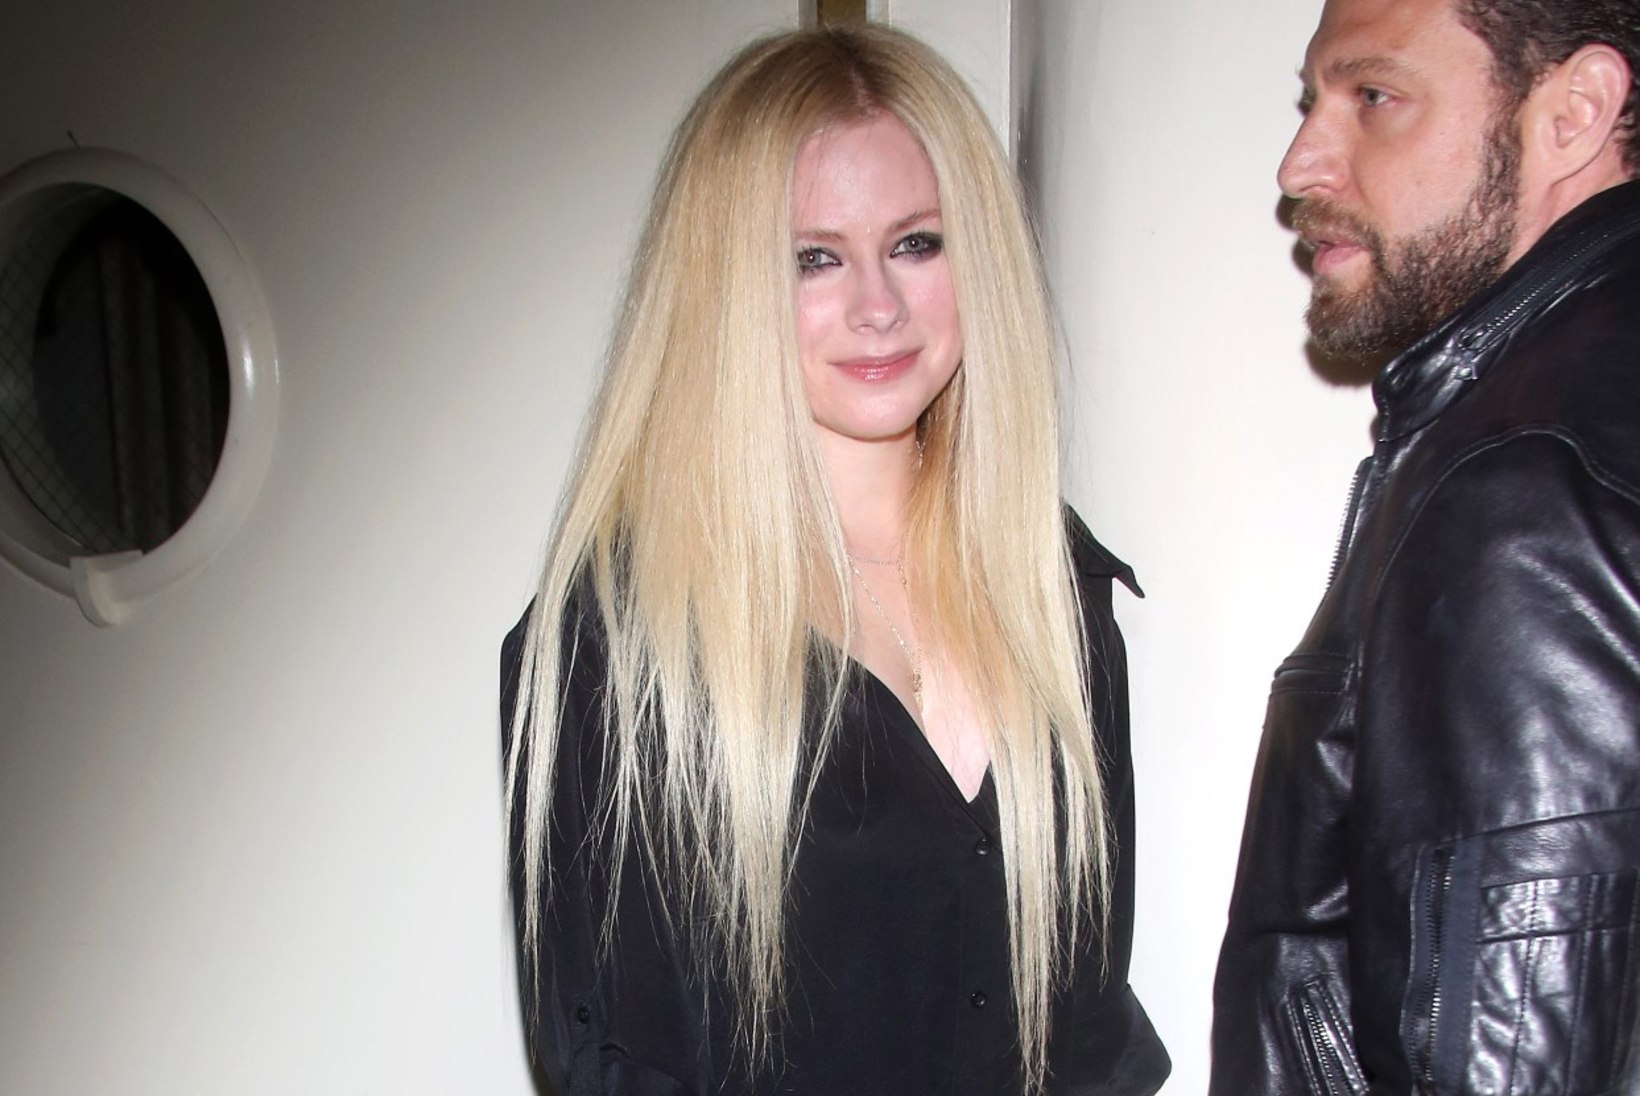 Borrelioosiga maadelnud Avril Lavigne näitas üle pika aja avalikkuse ees nägu